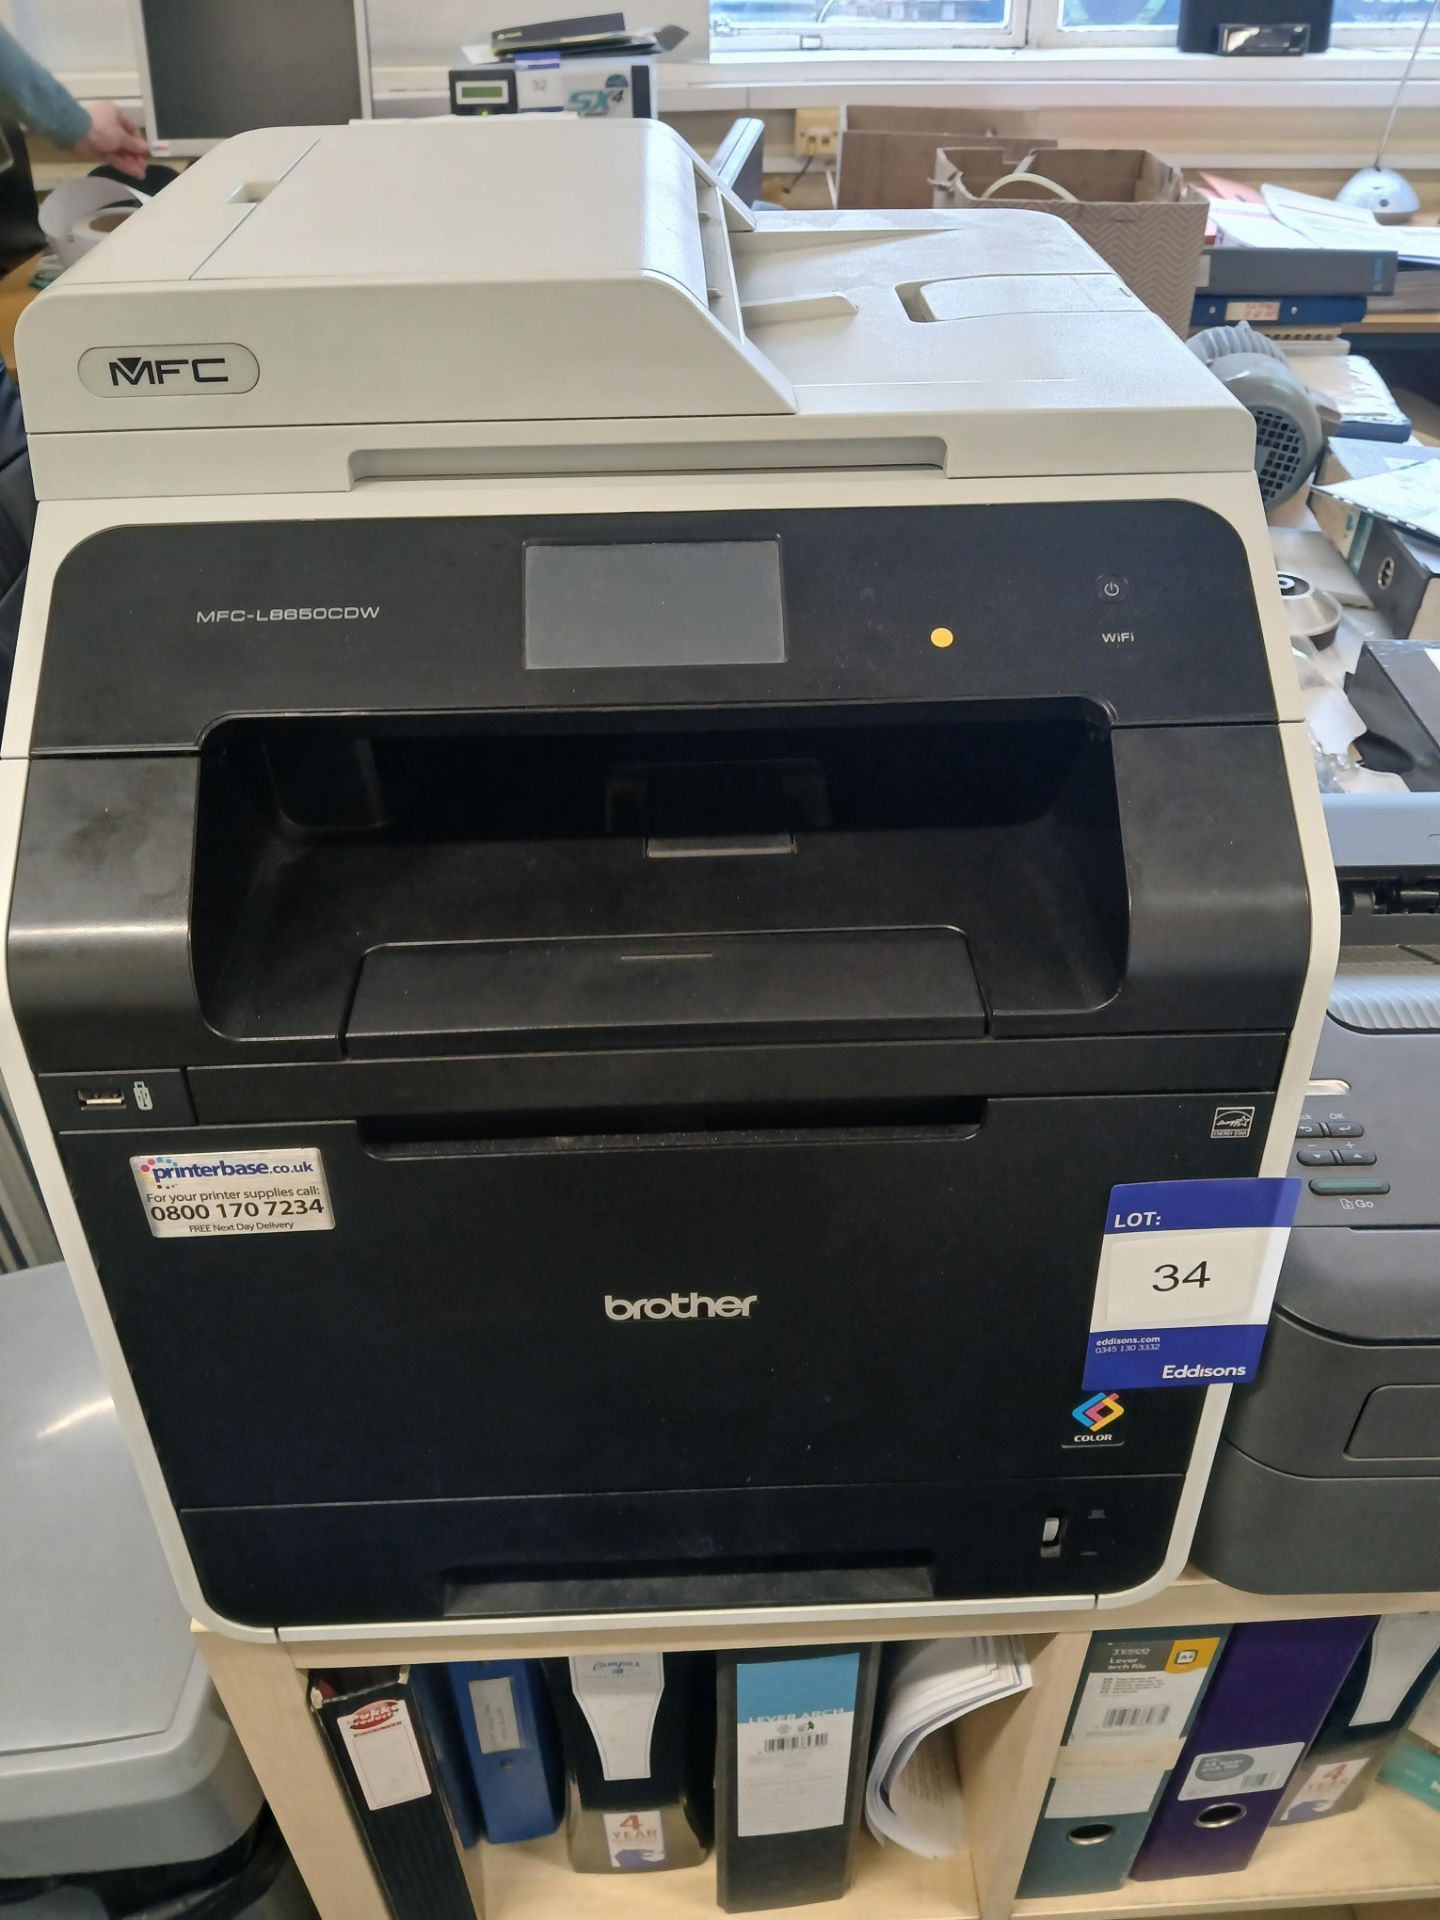 Brother MFC-L8650DW laser printer